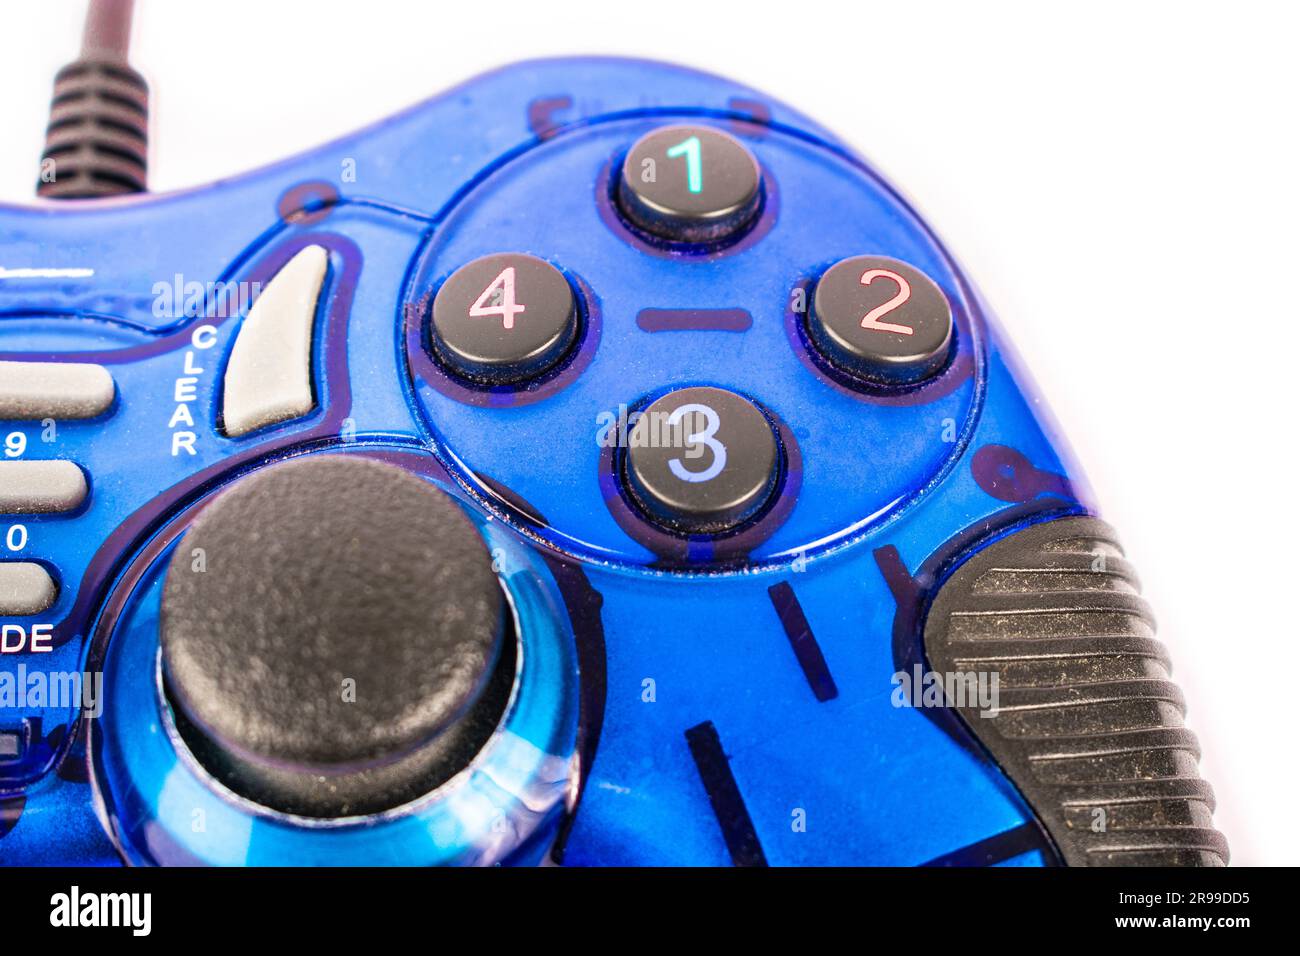 Der isolierte blaue Joystick für Controller und Videospiel auf weißem Hintergrund Stockfoto